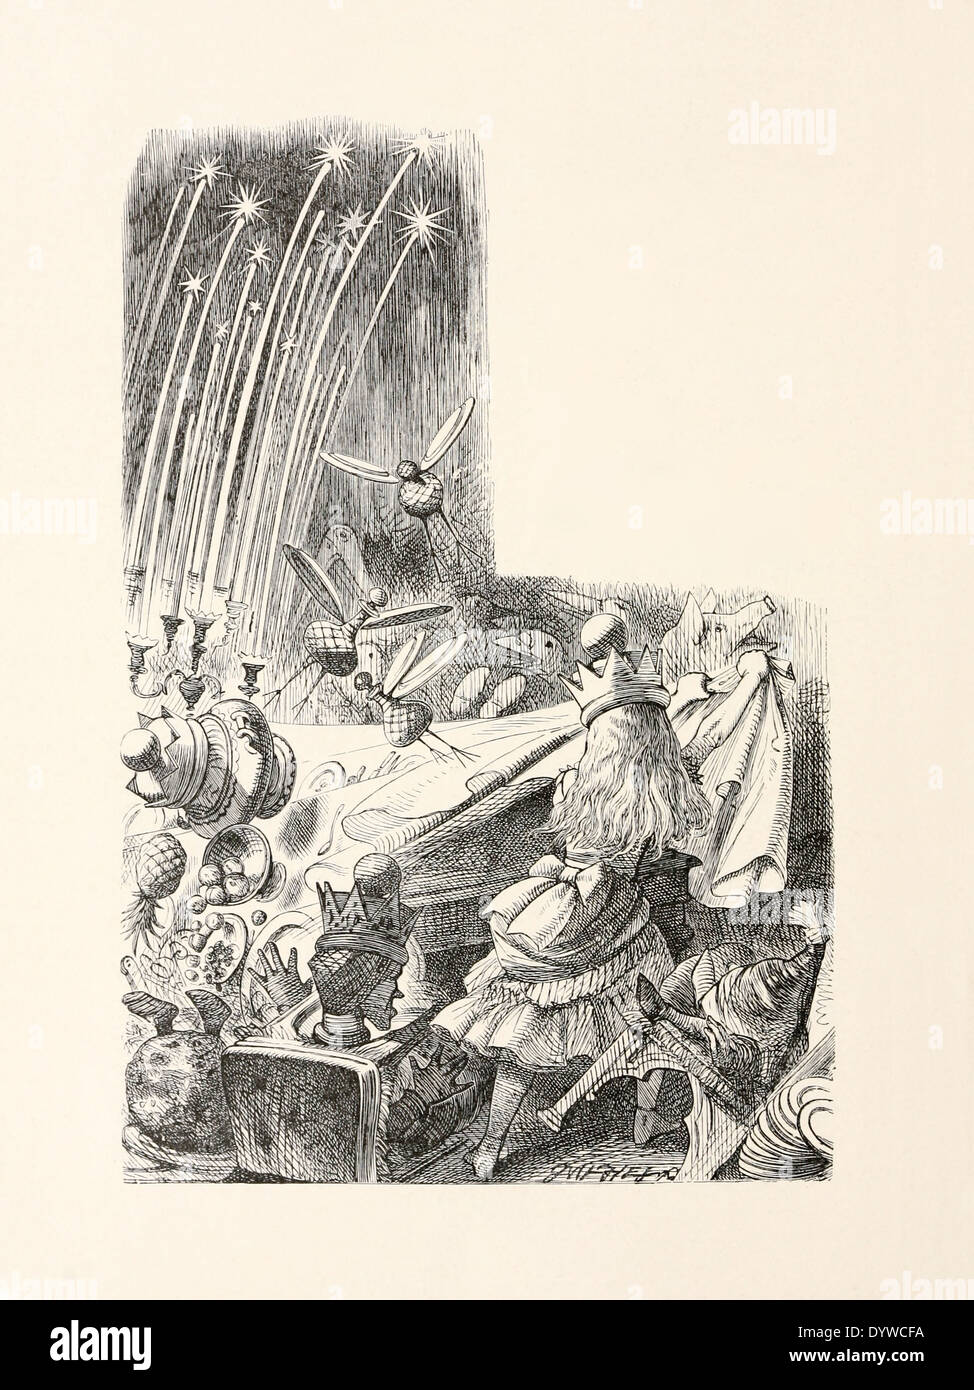 John Tenniel (1820-1914) Illustration de Lewis Carroll, dans de l'autre côté du '" publié en 1871. Tire la nappe. Banque D'Images